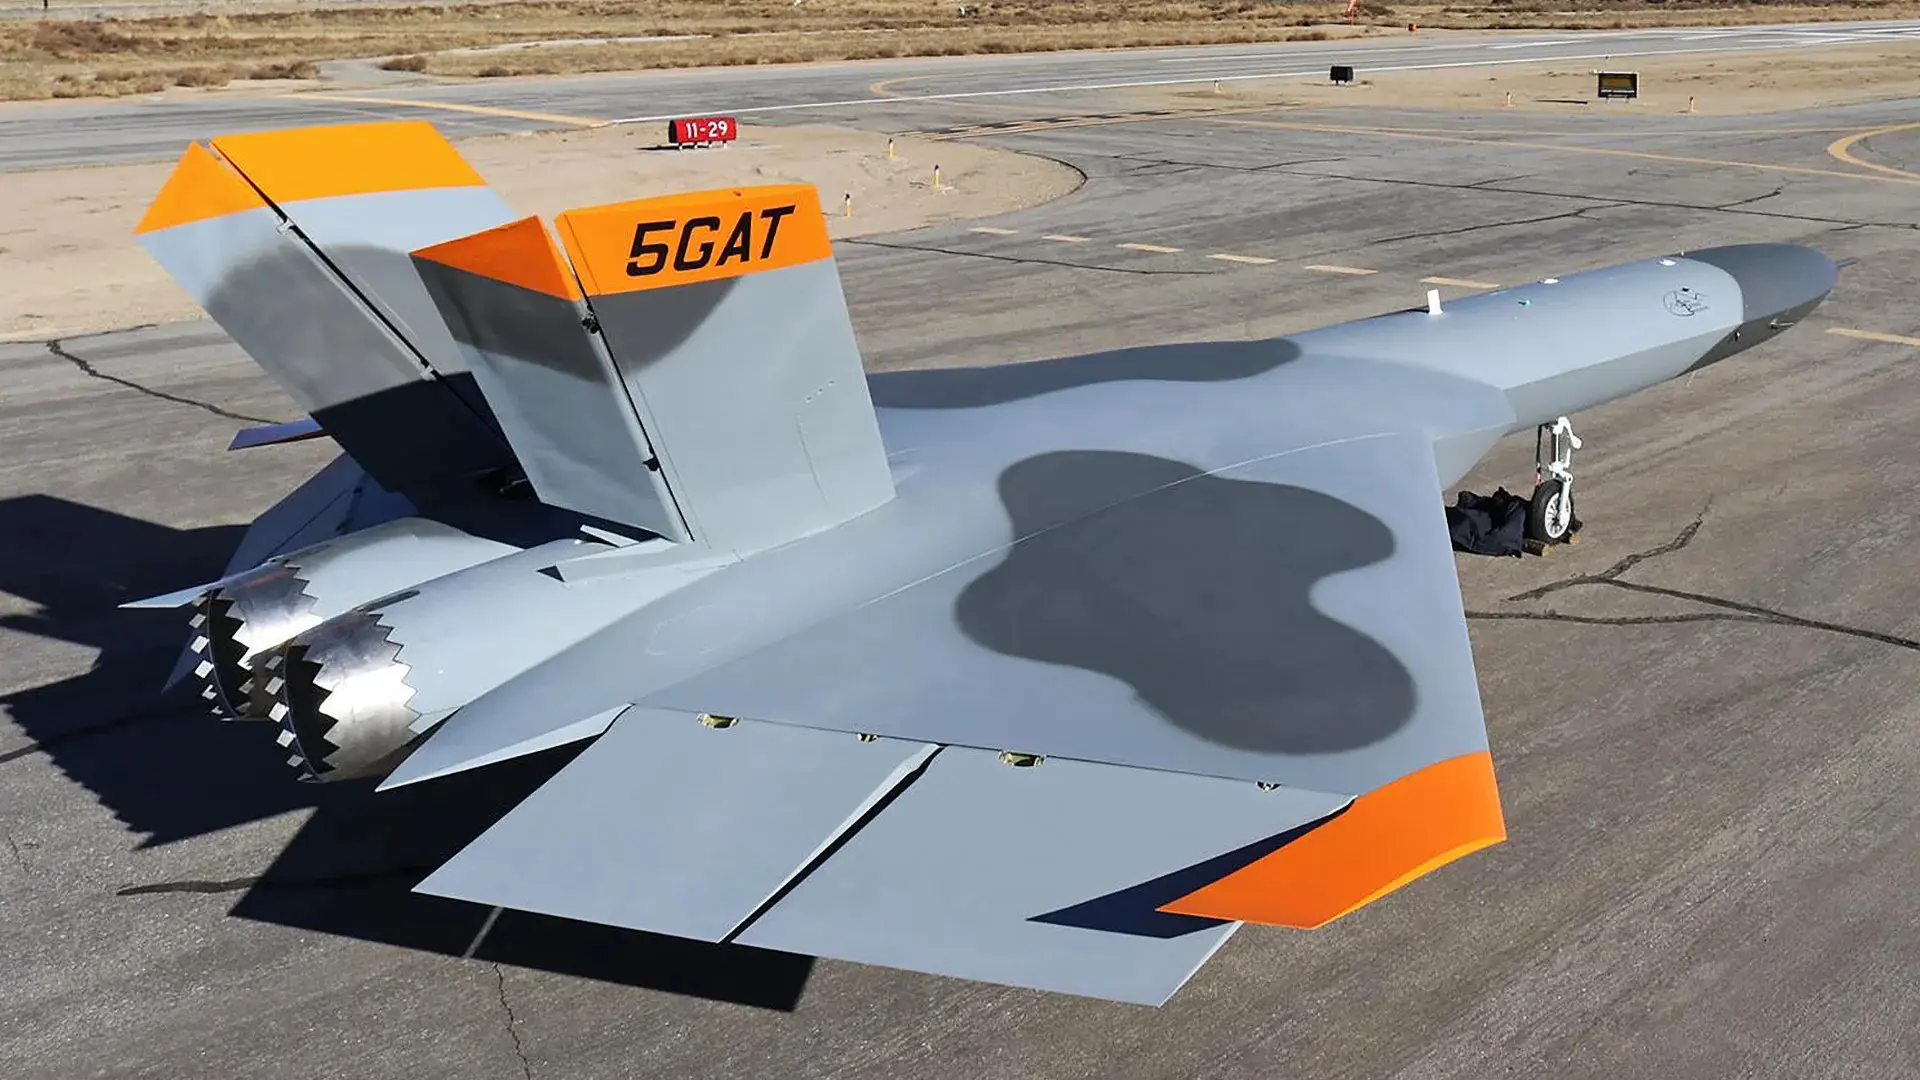 USA vil bygge en 5GAT-drone, der skal efterligne Ruslands femtegenerations Su-57-kampfly og Kinas J-20.